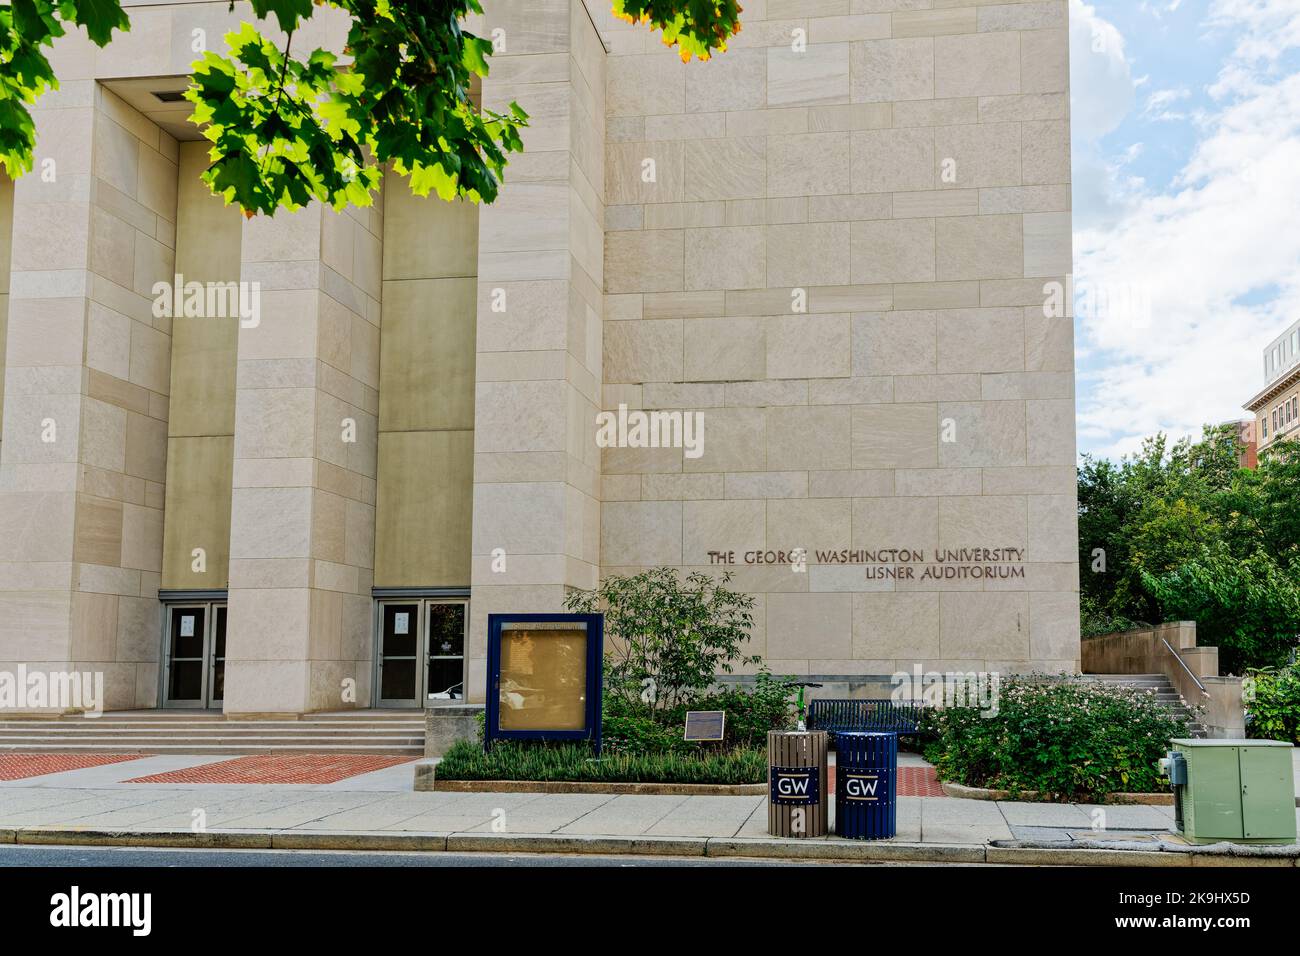 Washington, DC - Sept. 8, 2022: The George Washington University Lisner Auditorium is located on the Foggy Bottom campus. Stock Photo